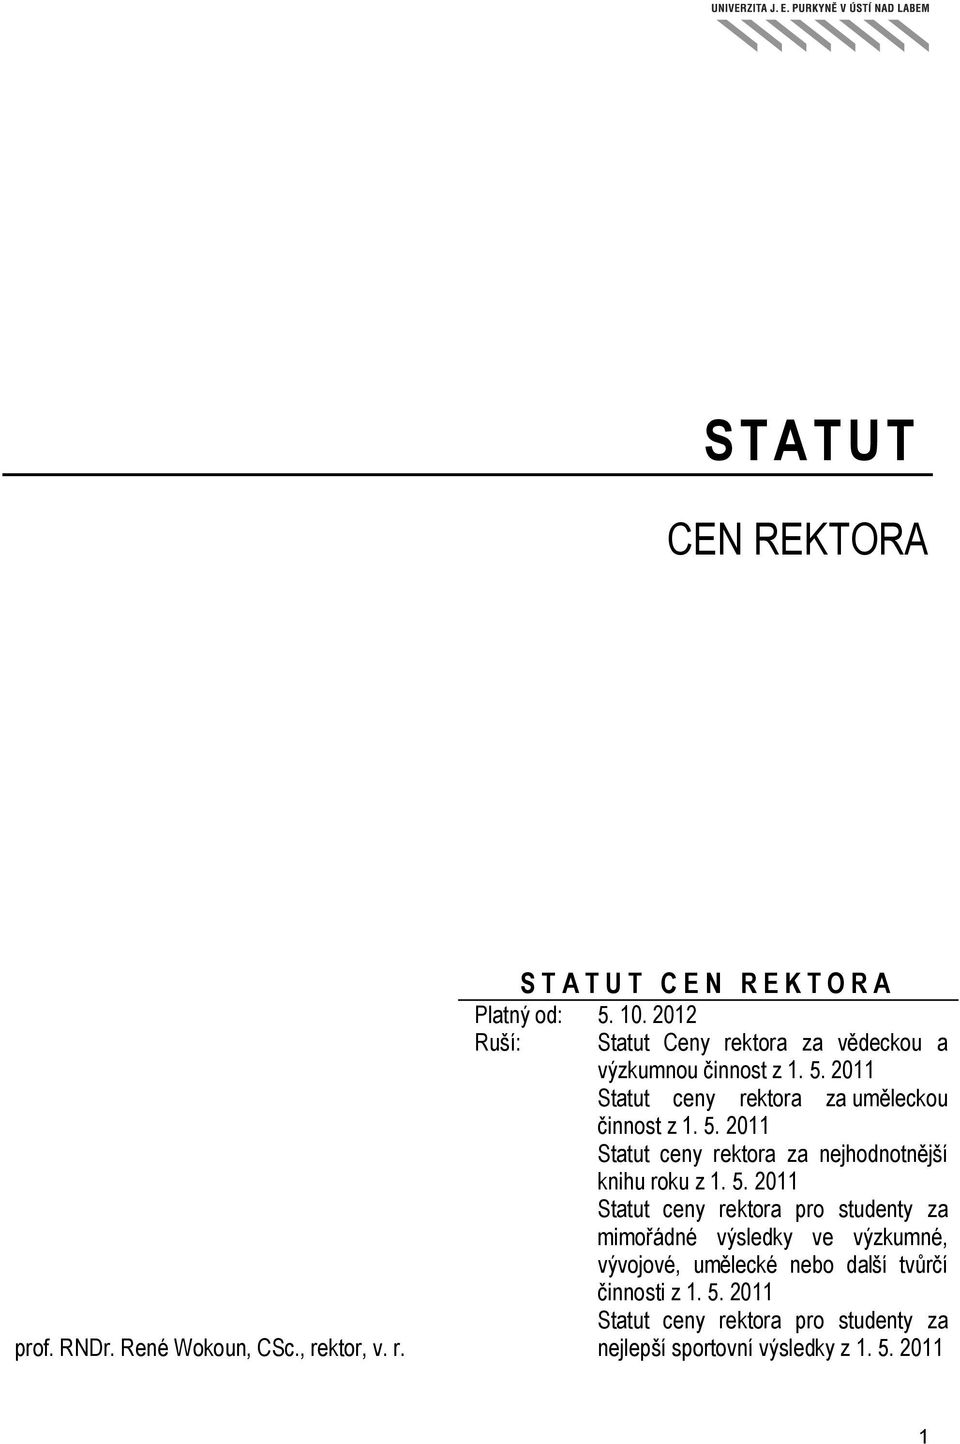 2011 Statut ceny rektora za uměleckou činnost z 1. 5.